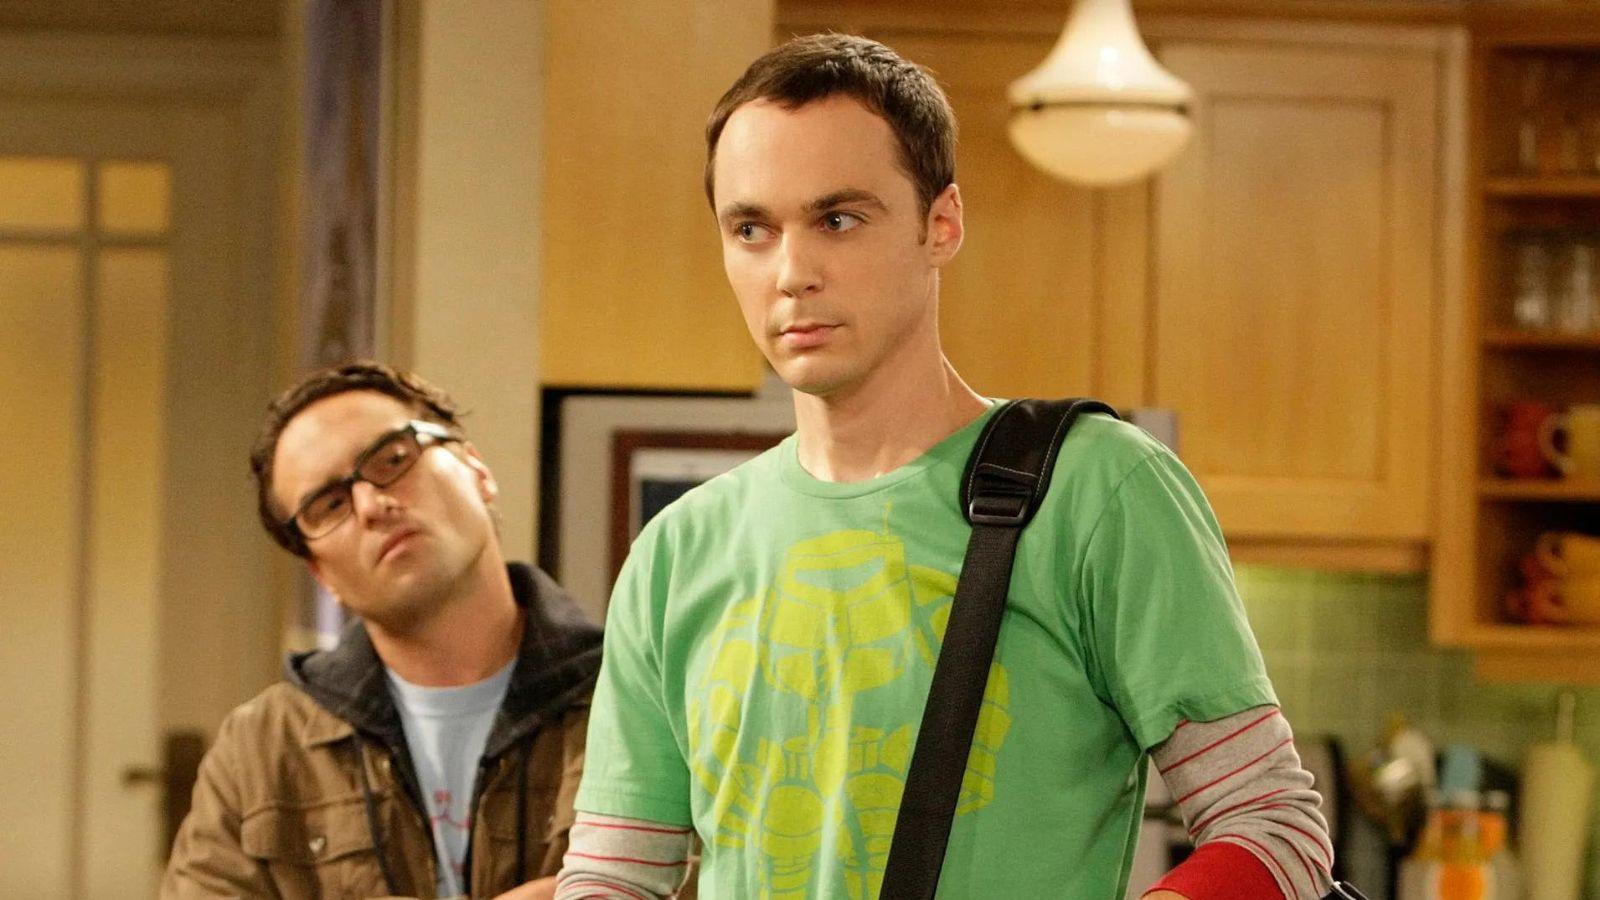 Sheldon Cooper in Big Bang Theory, soon to be Young Sheldon.